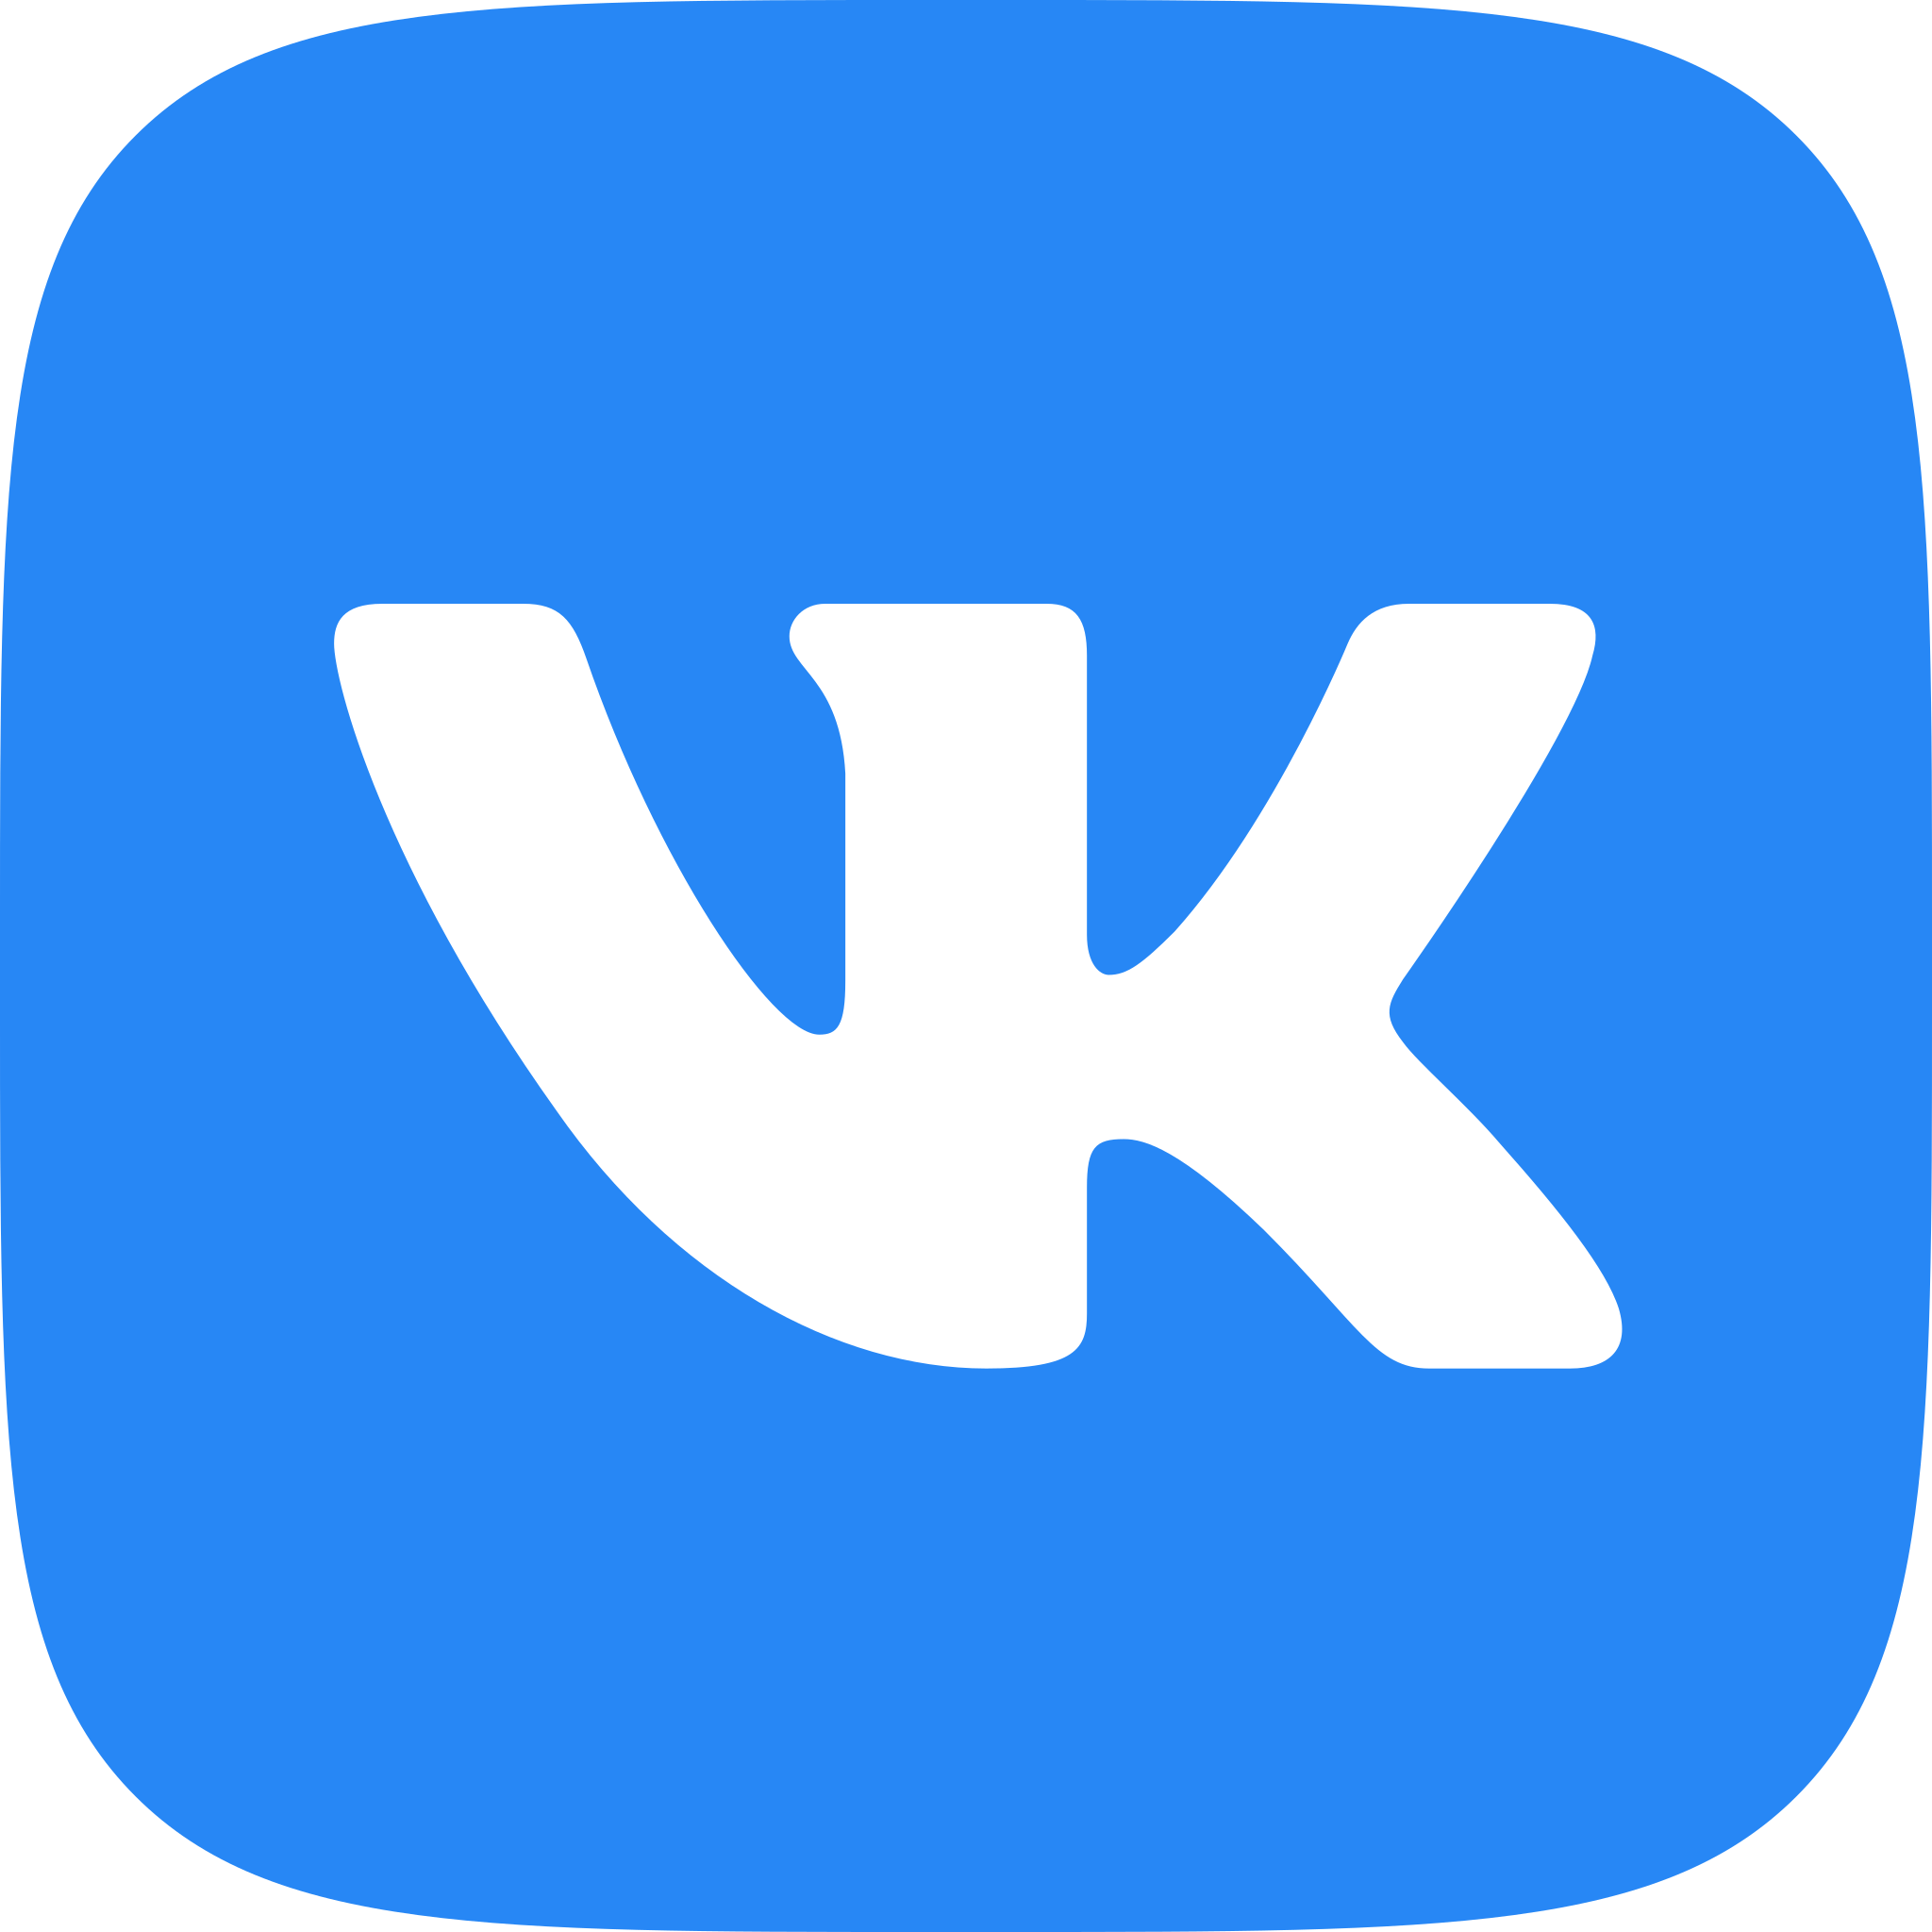 Вебмастер - мы работаем ВКонтакте!